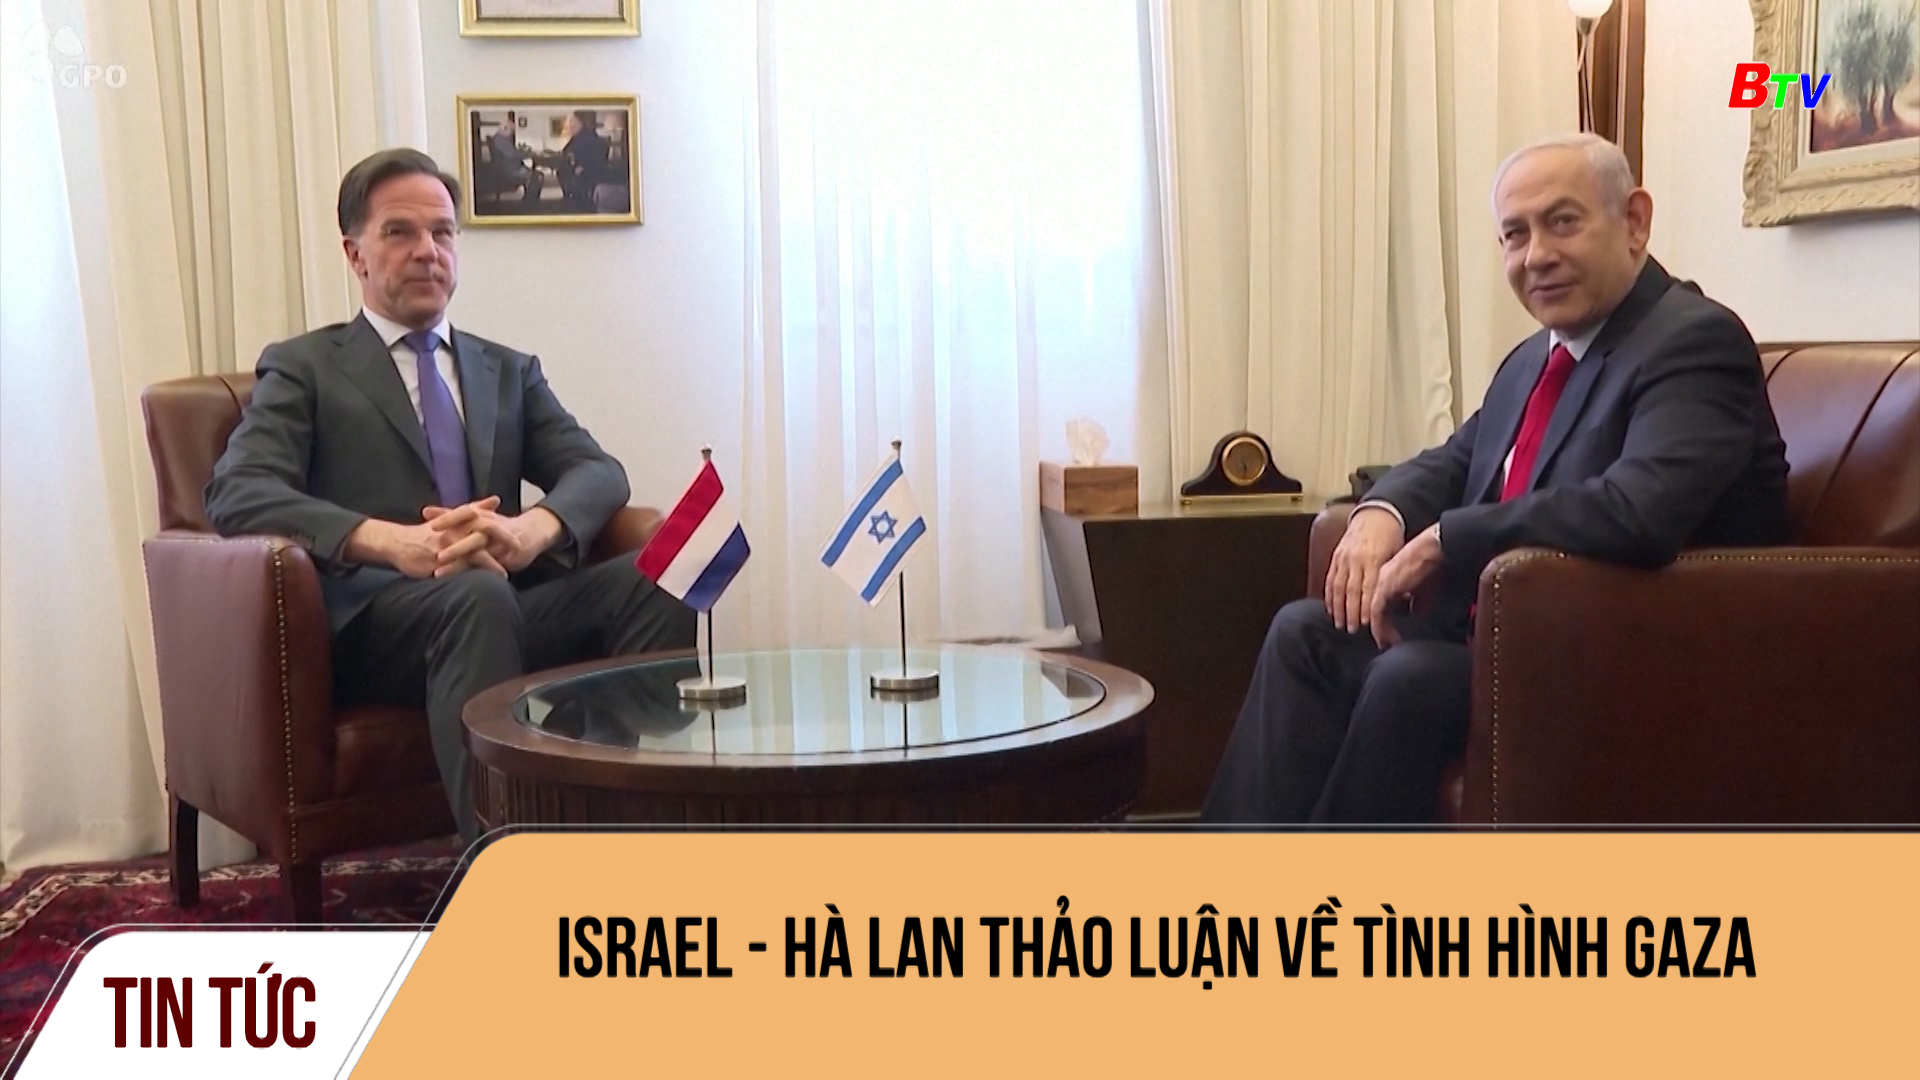 Israel - Hà Lan thảo luận về tình hình Gaza